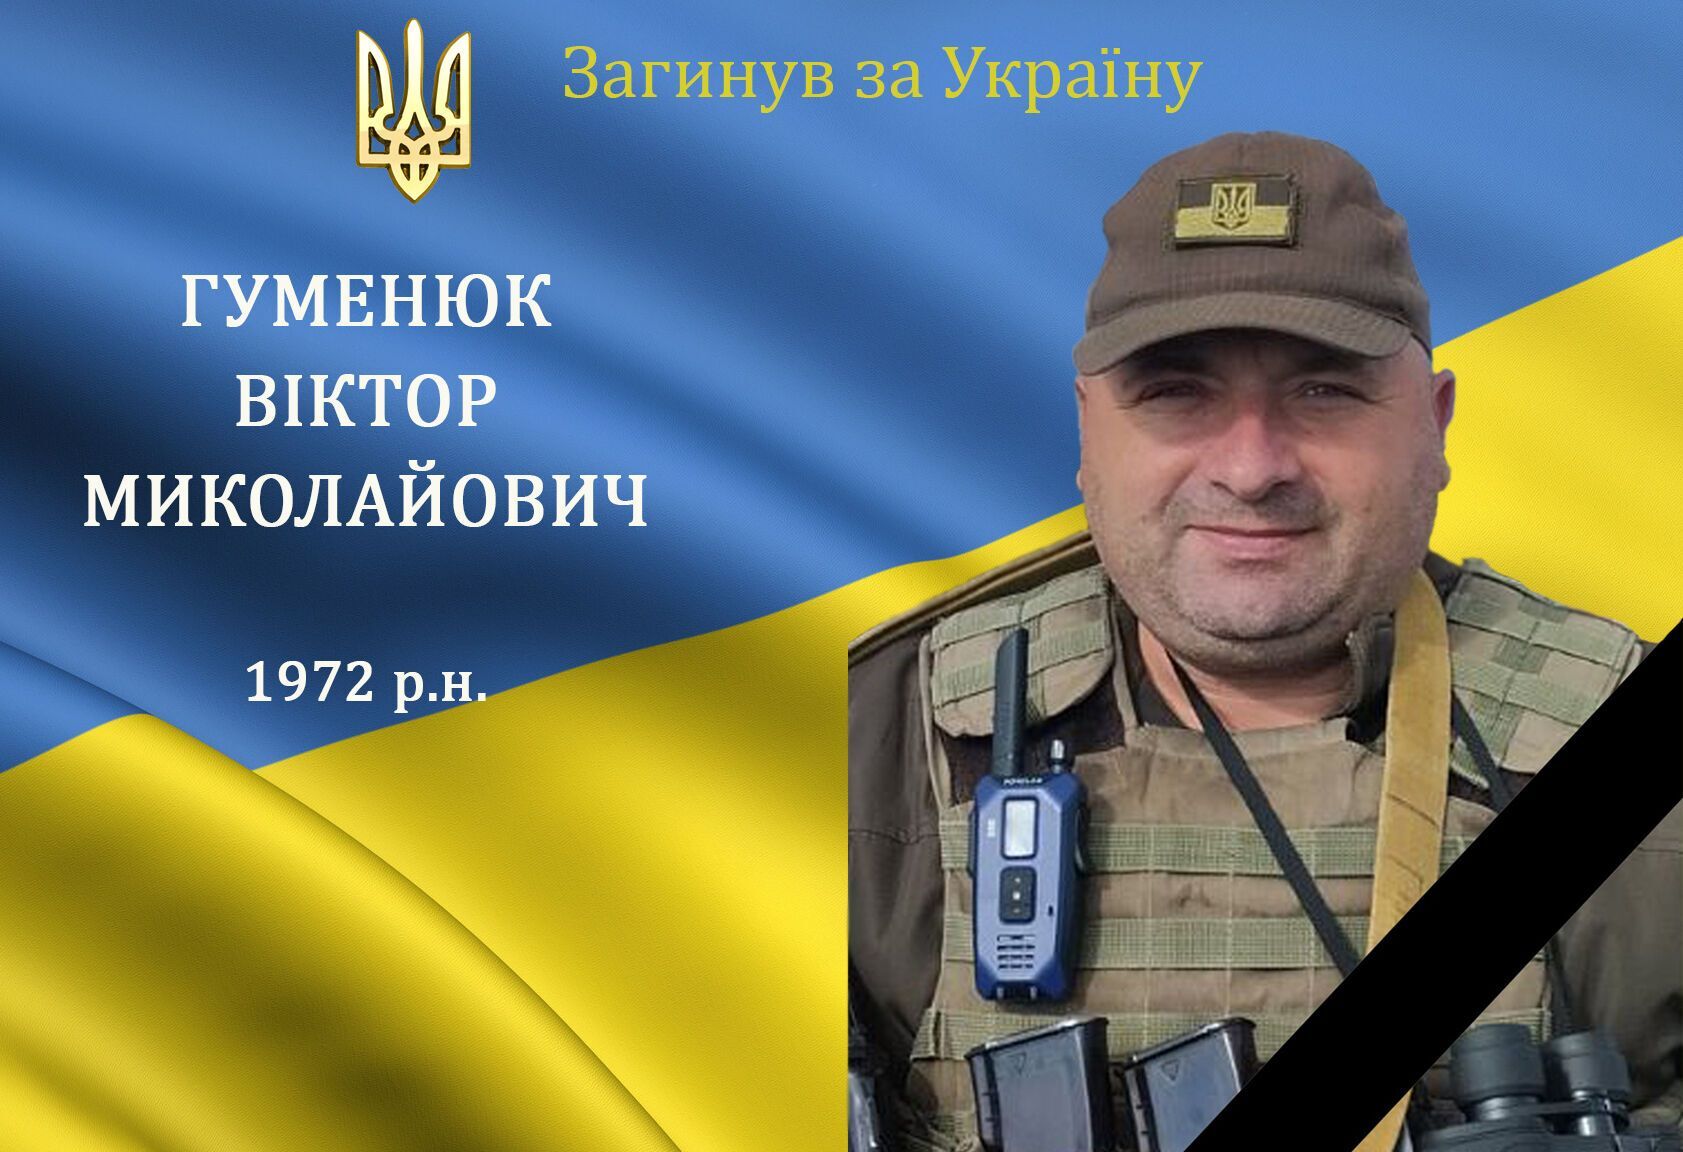 Український військовослужбовець Гуменюк Віктор Миколайович